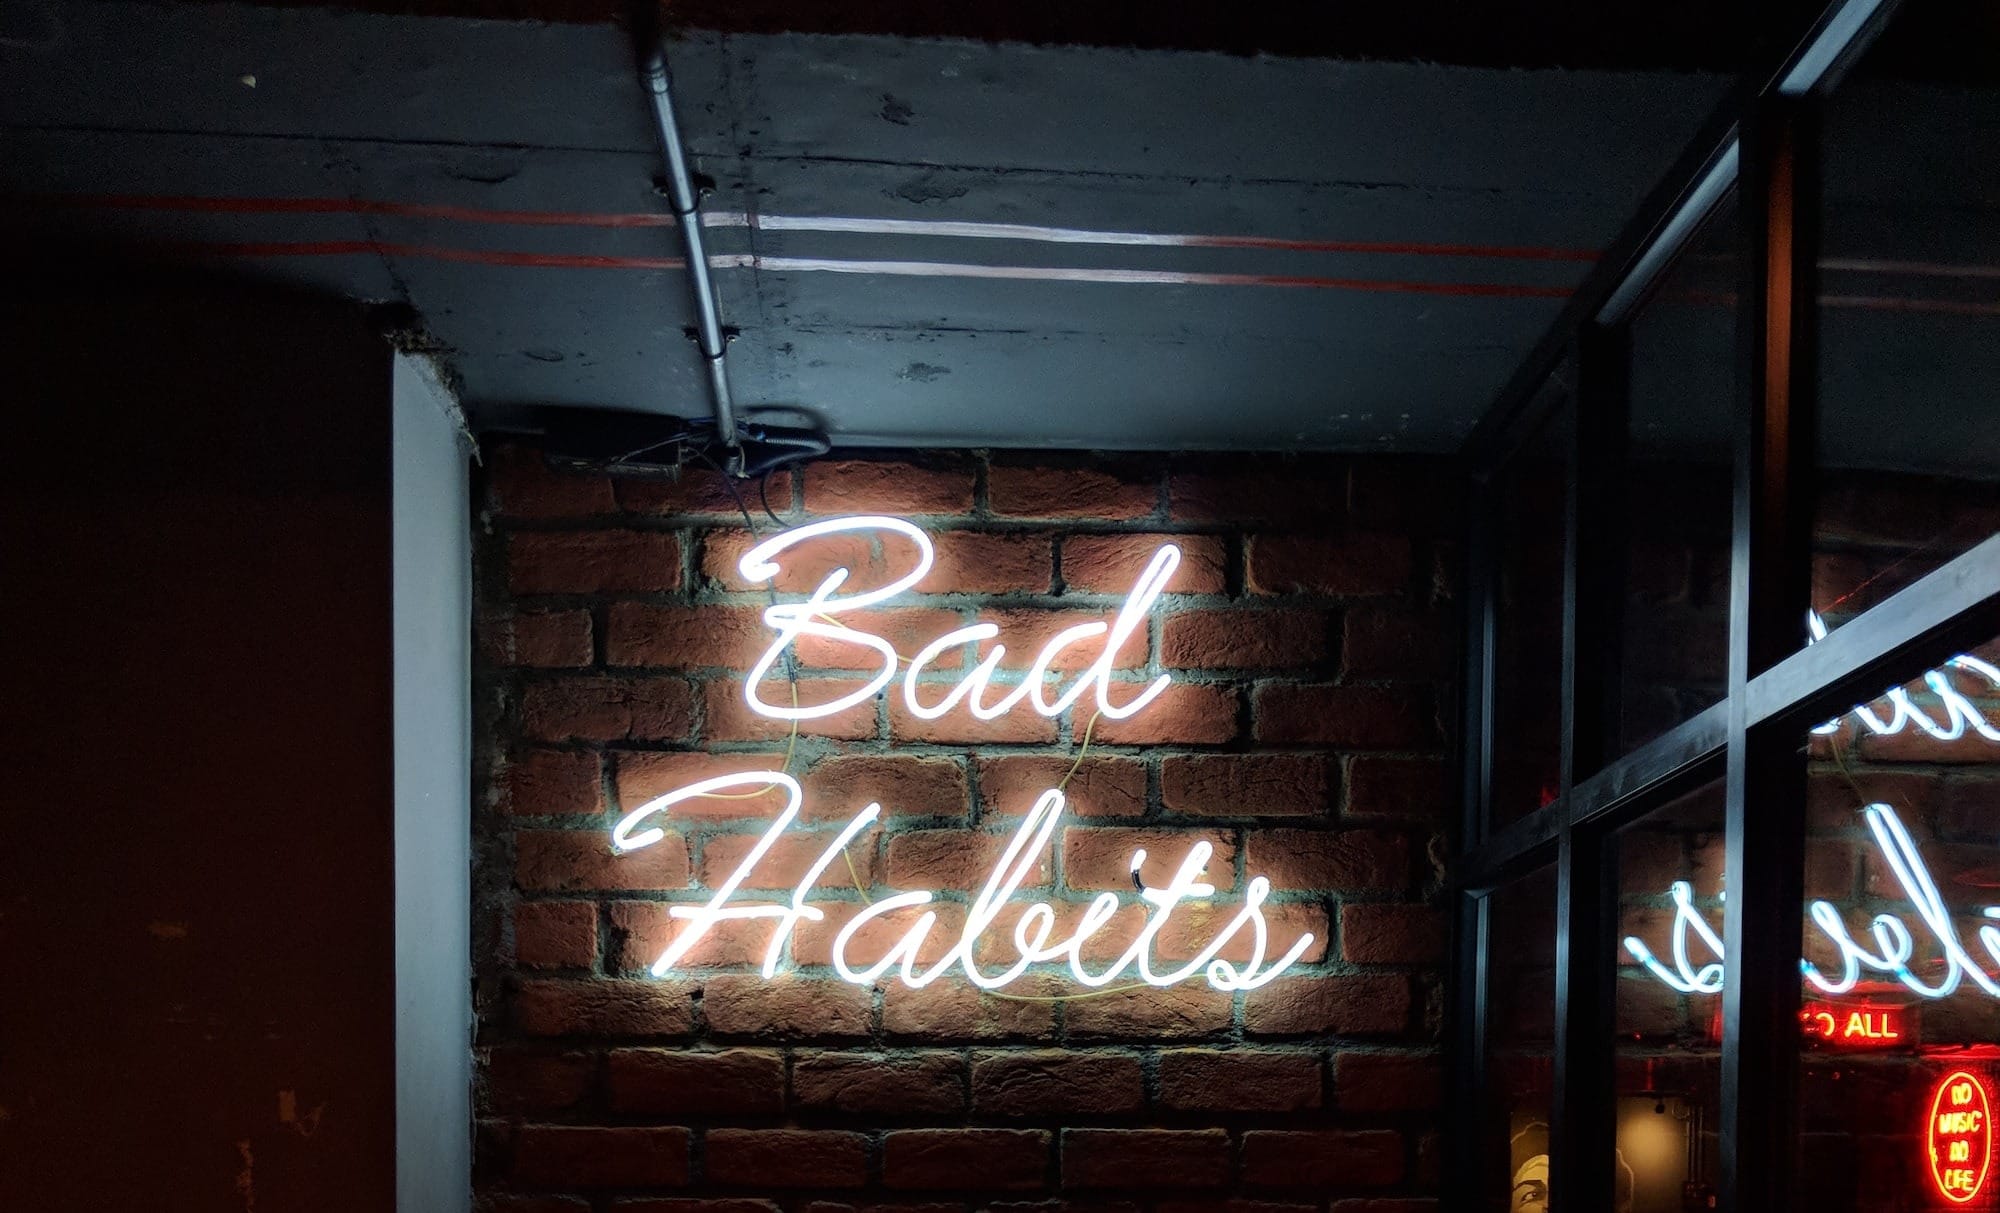 white bad habits LED signage